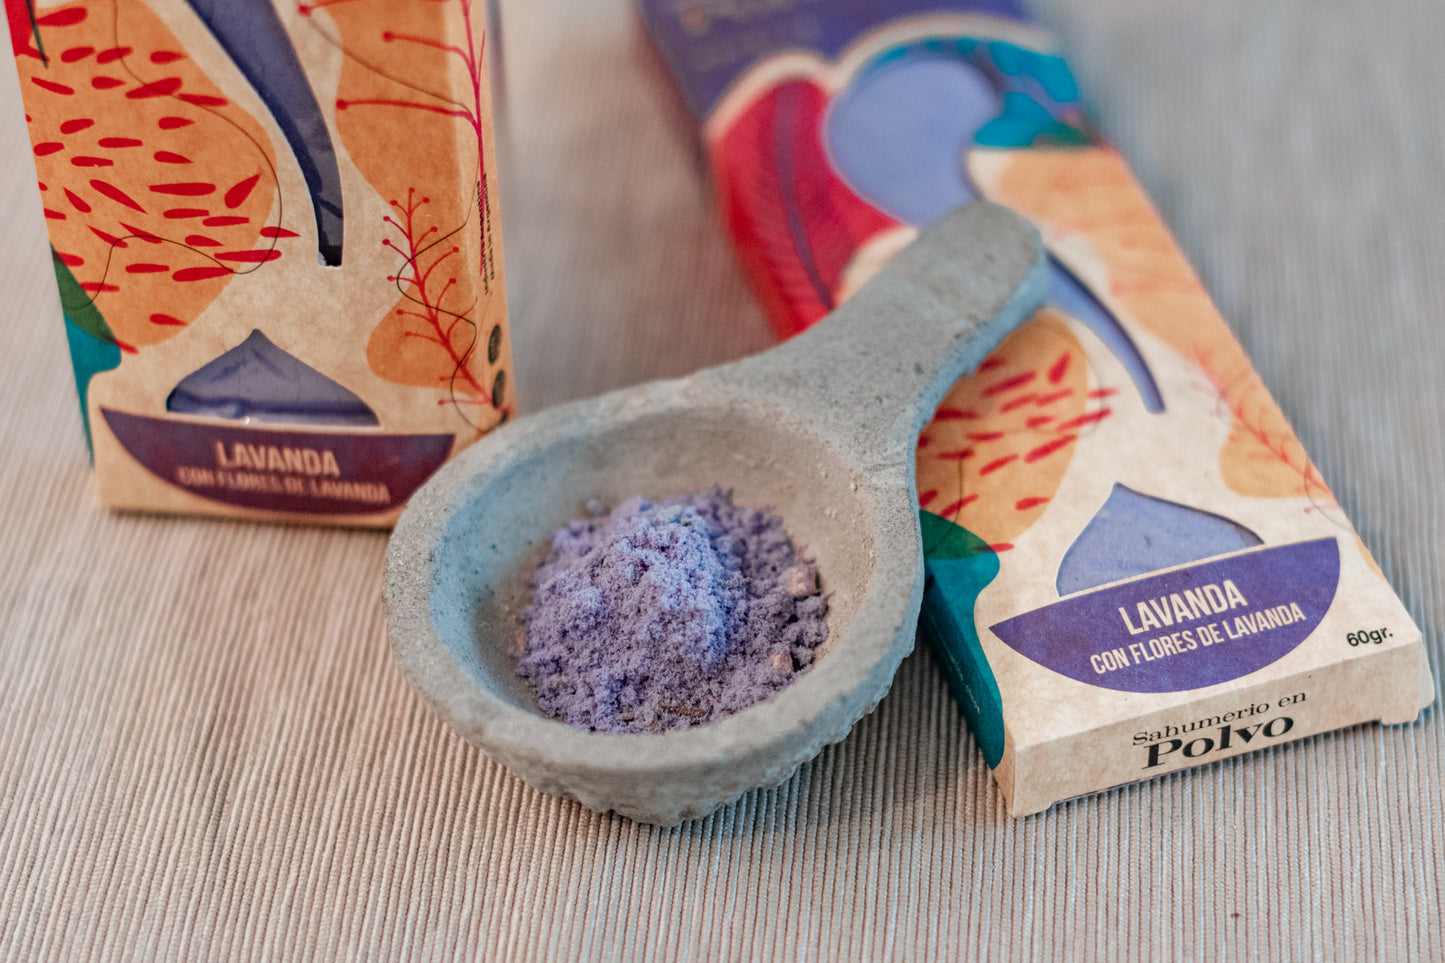 Premium Räucherpulver “Gelassenheit” - Räucherwerk mit Lavendel Duft